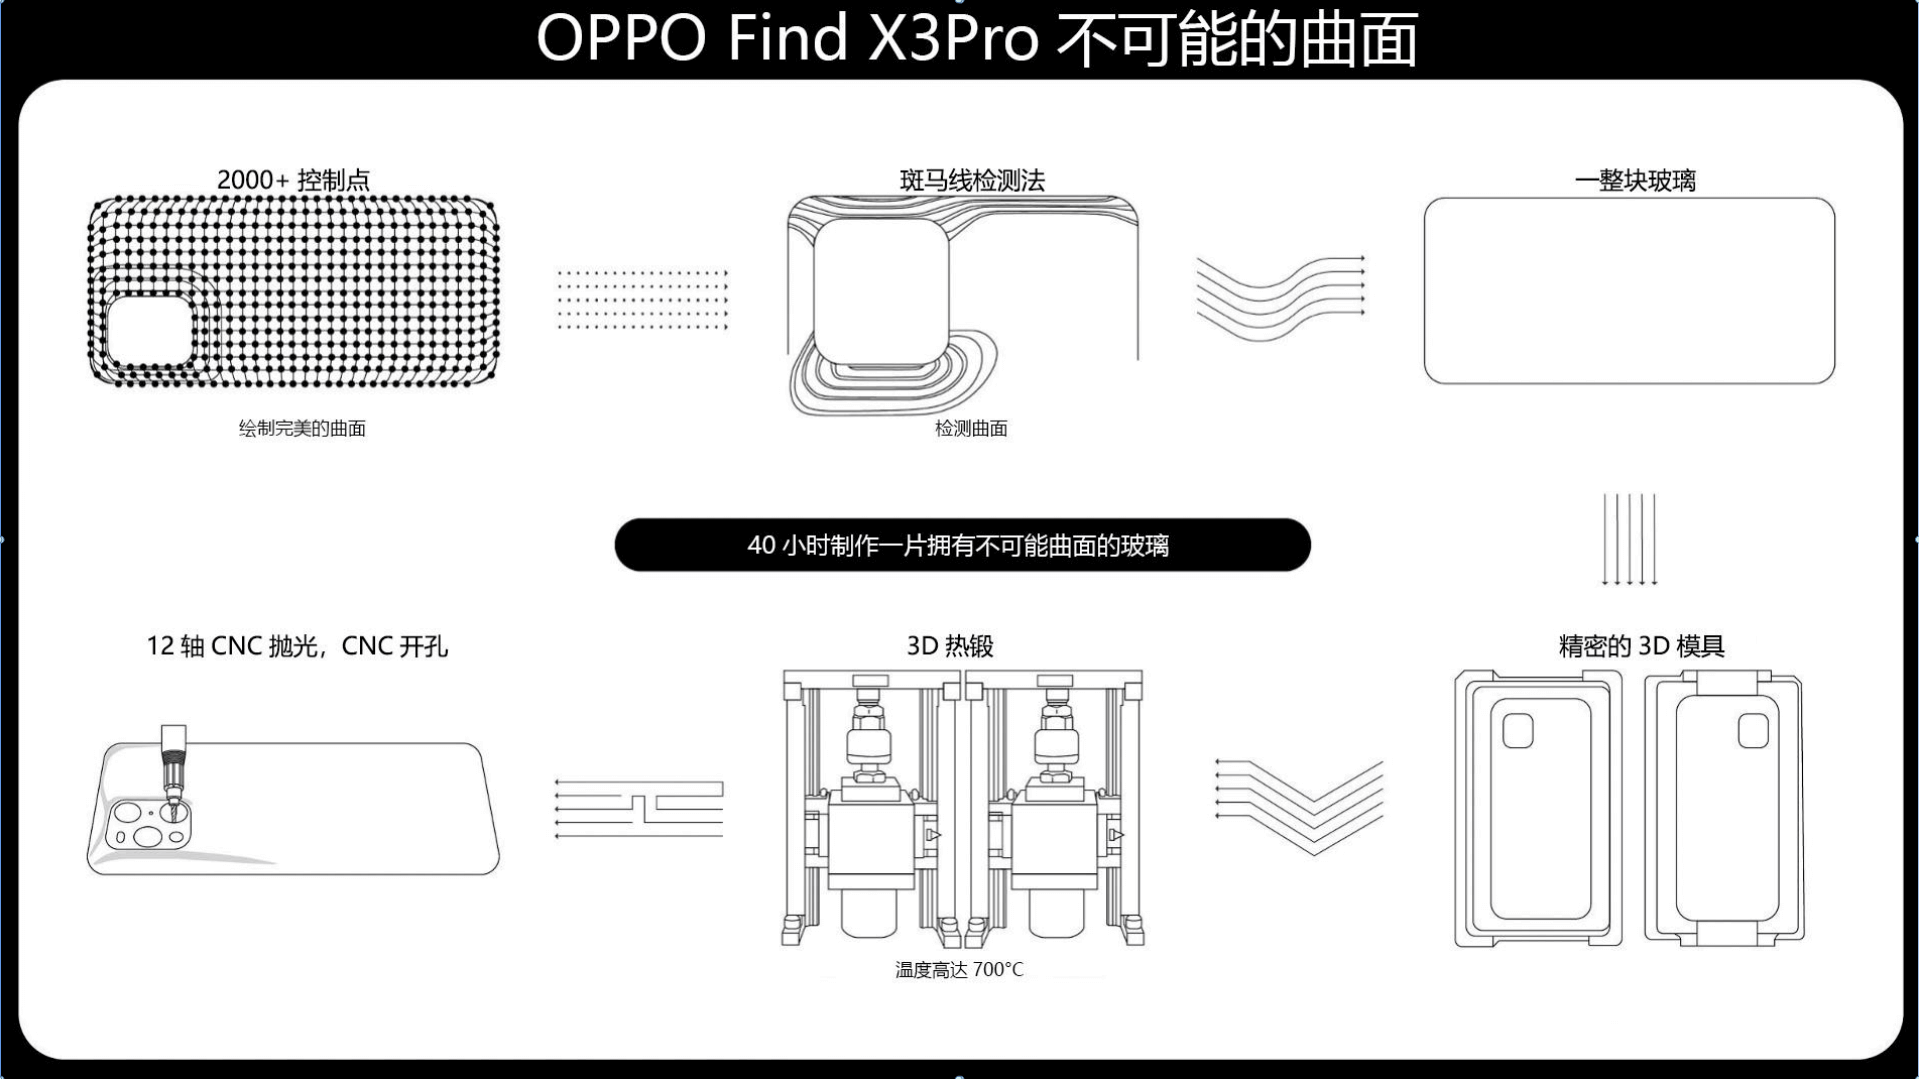 OPPO Find X3 pro